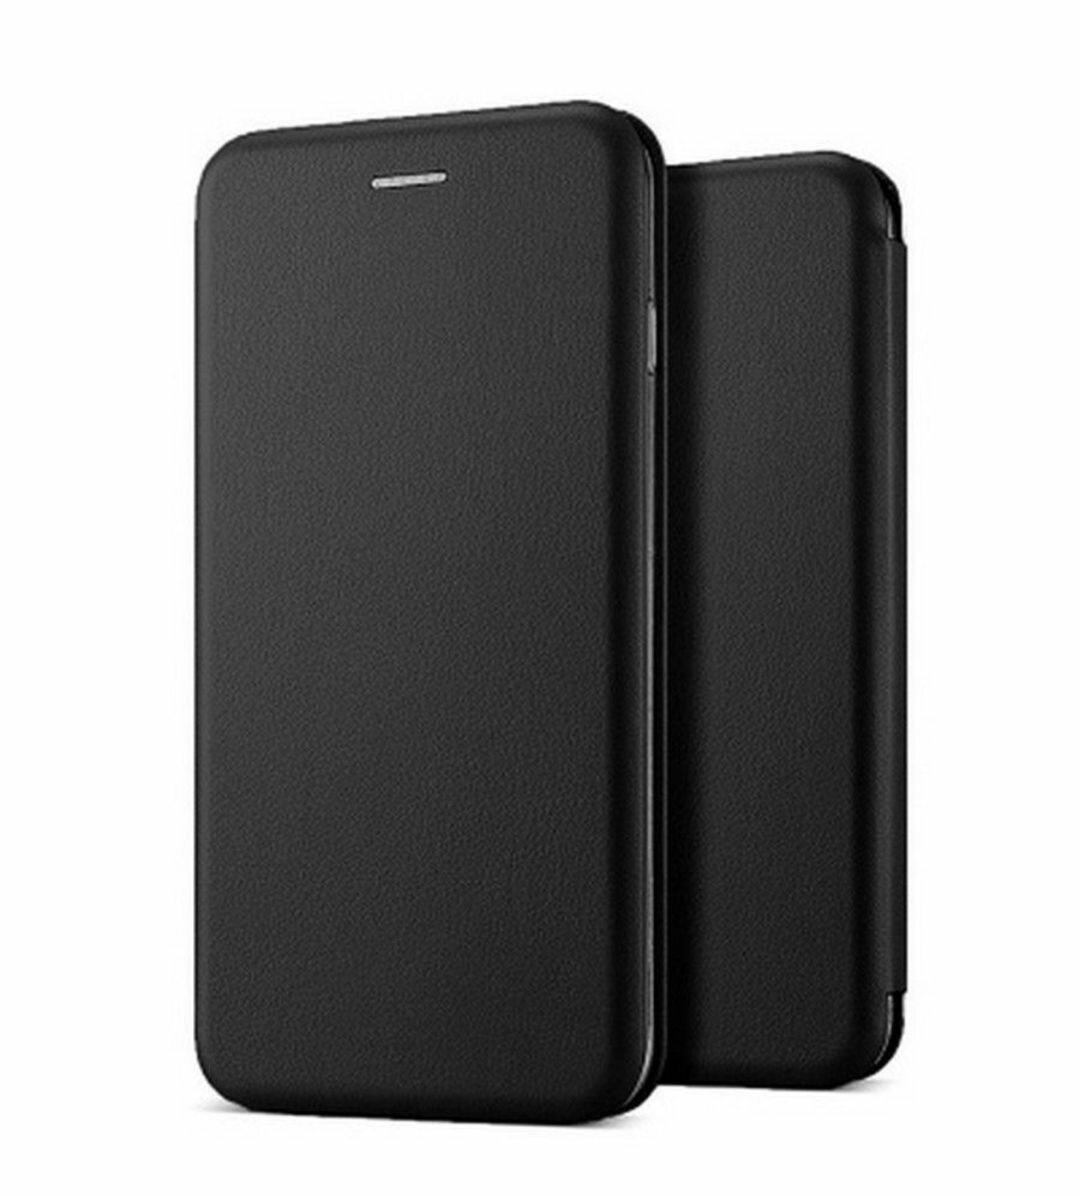 Samsung Galaxy A5 2016 a510 чёрный чехол-книжка эко-кожа для самсунг галакси А5 а510 книга на магните галактика а 5